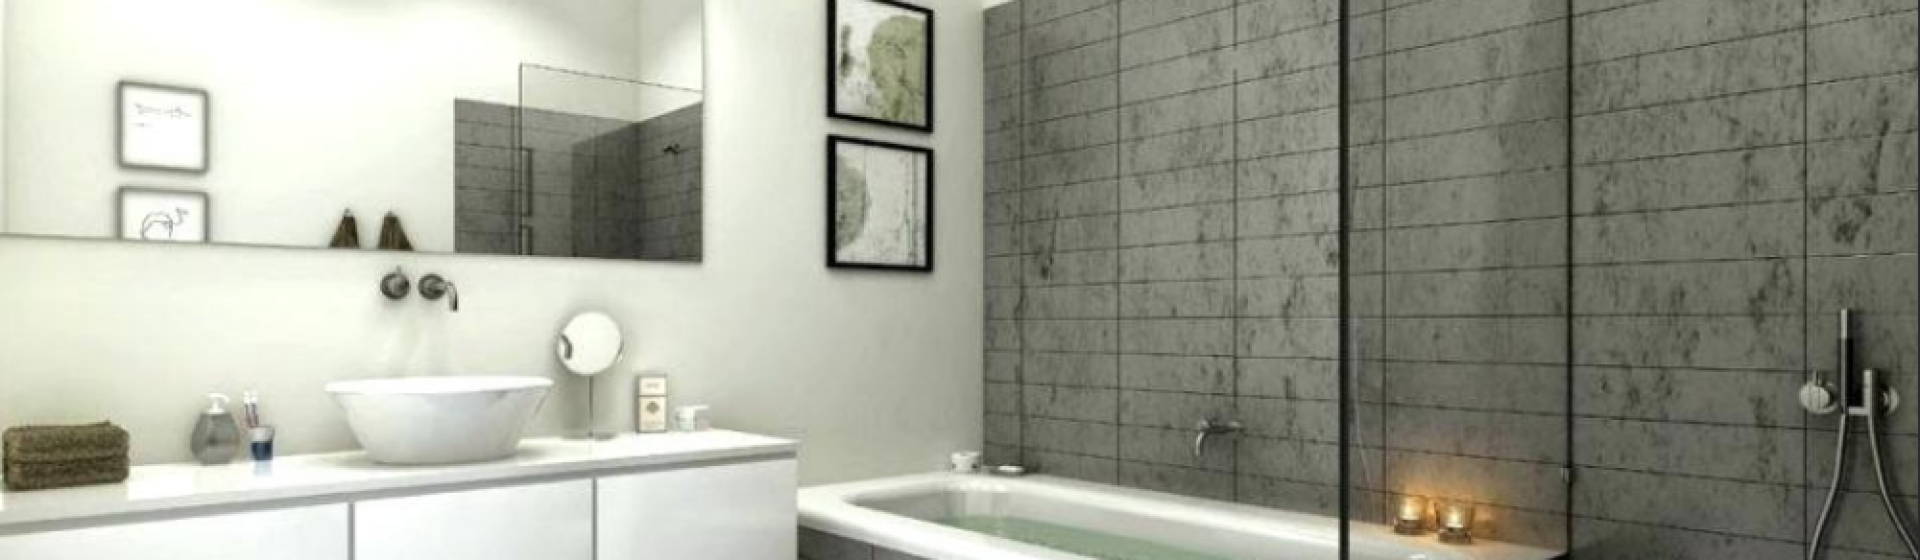 Service de rénovation de salle de bain à Limoges – BL Service Habitat